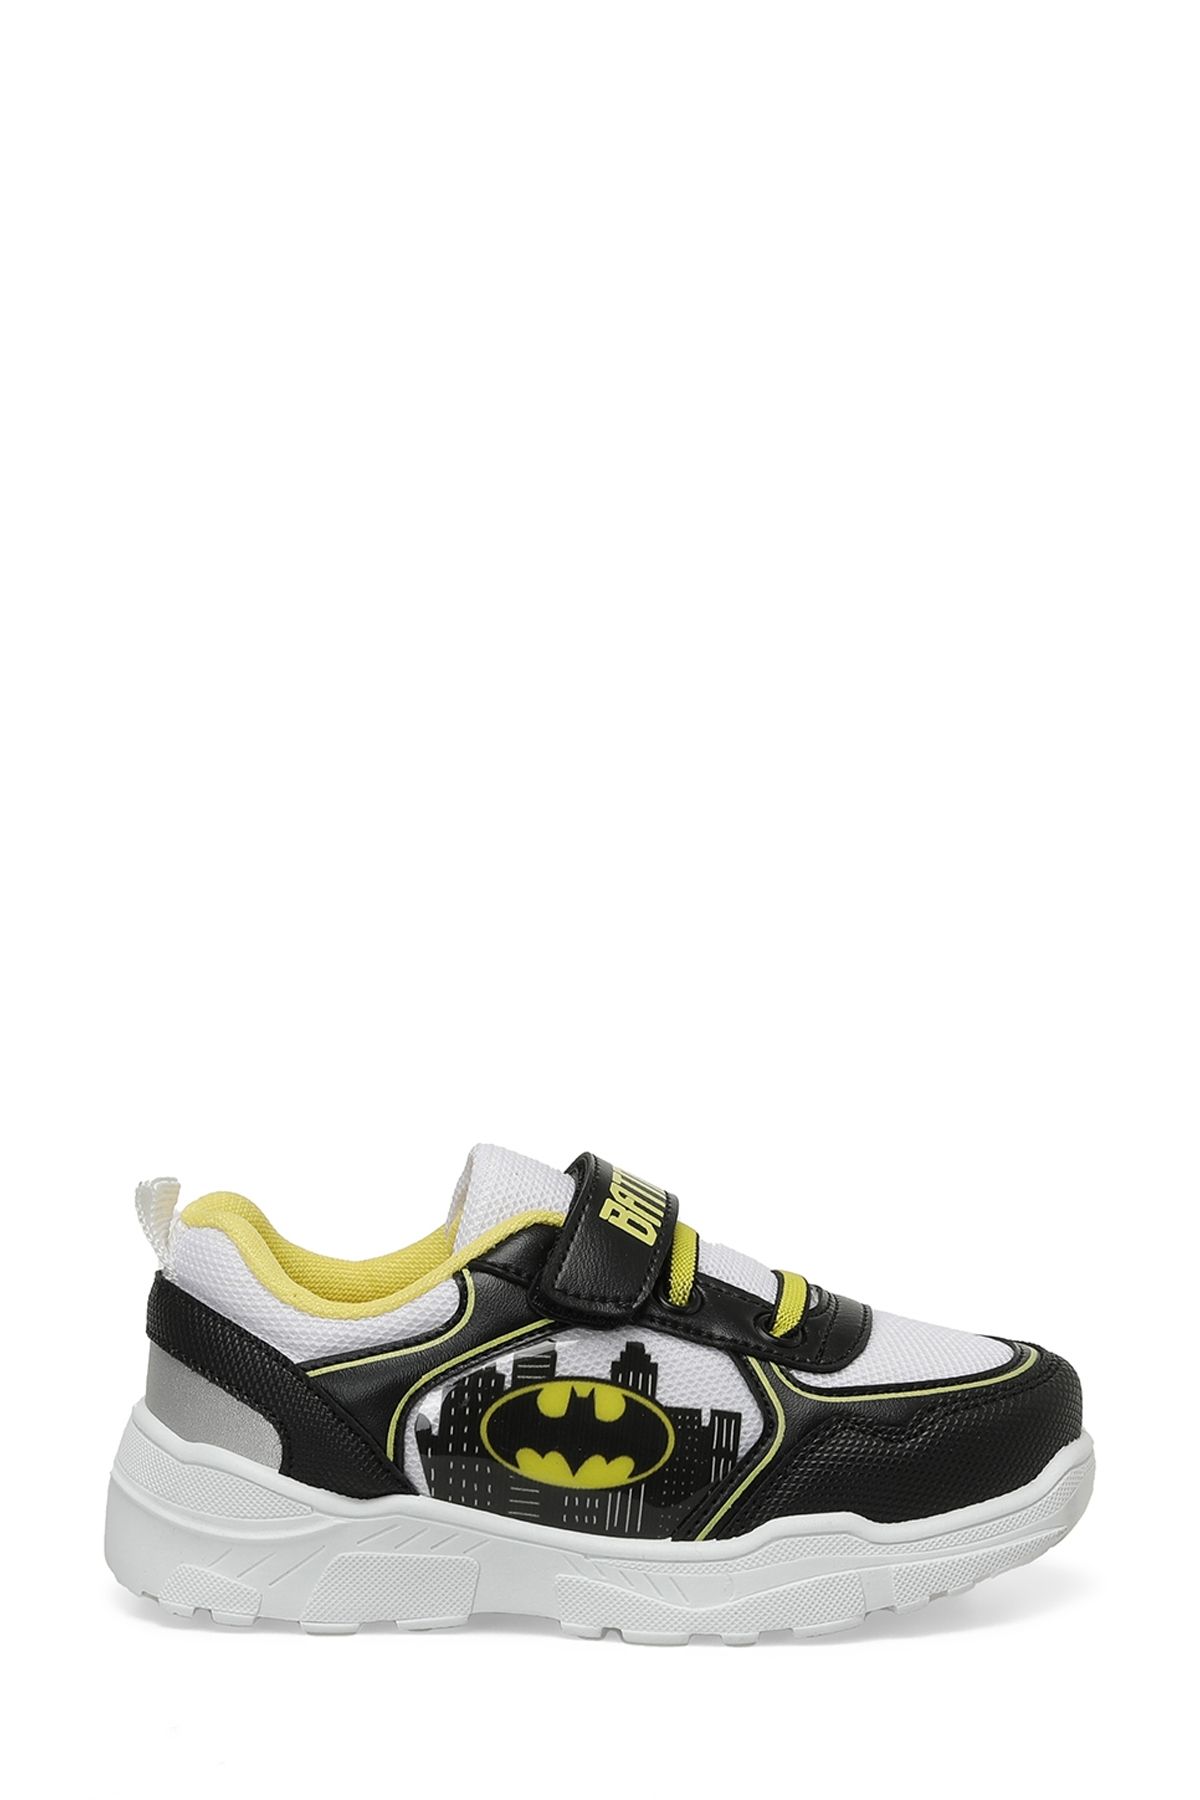 Batman CLASS.P4FX Beyaz Erkek Çocuk Spor Ayakkabı